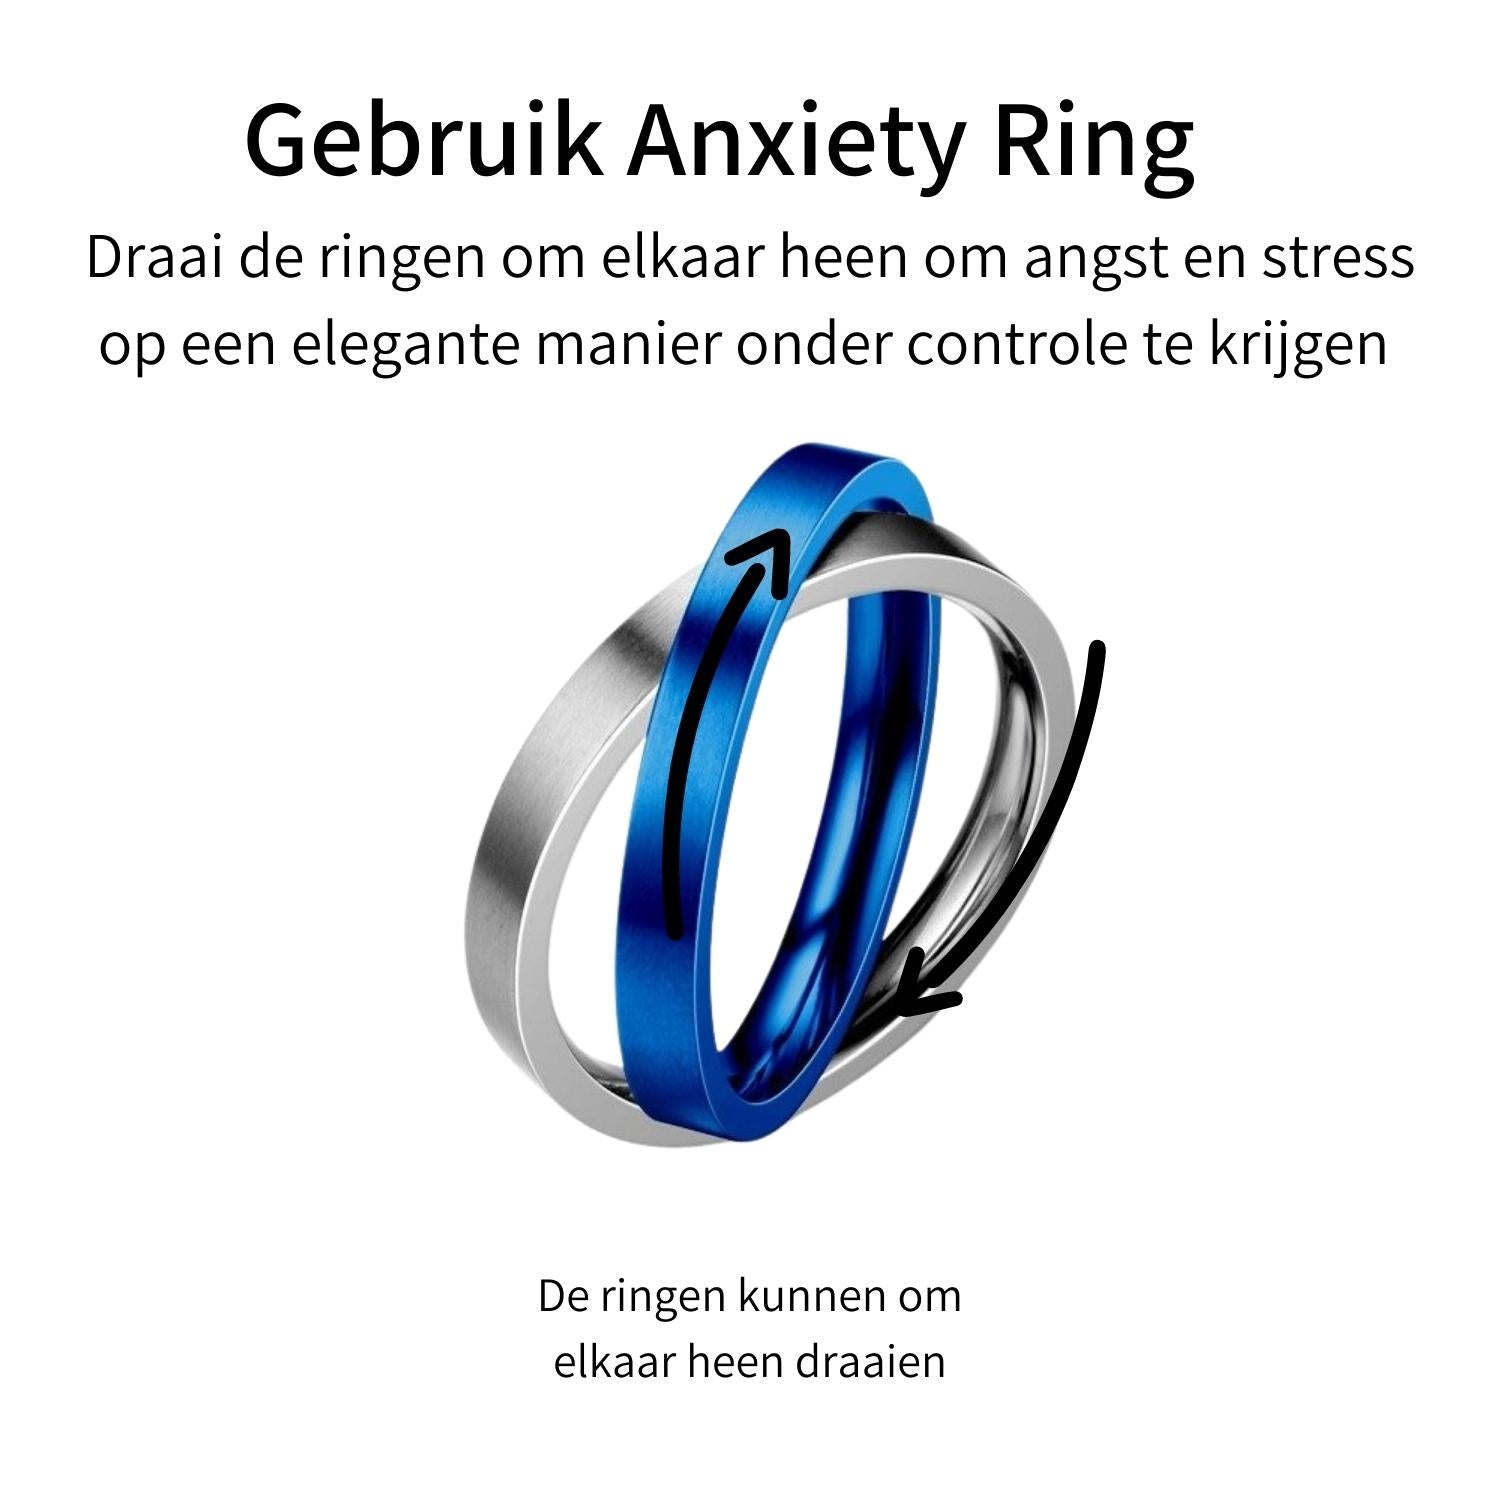 Anxiety Ring (twee ringen) Blauw-Zilver uitleg